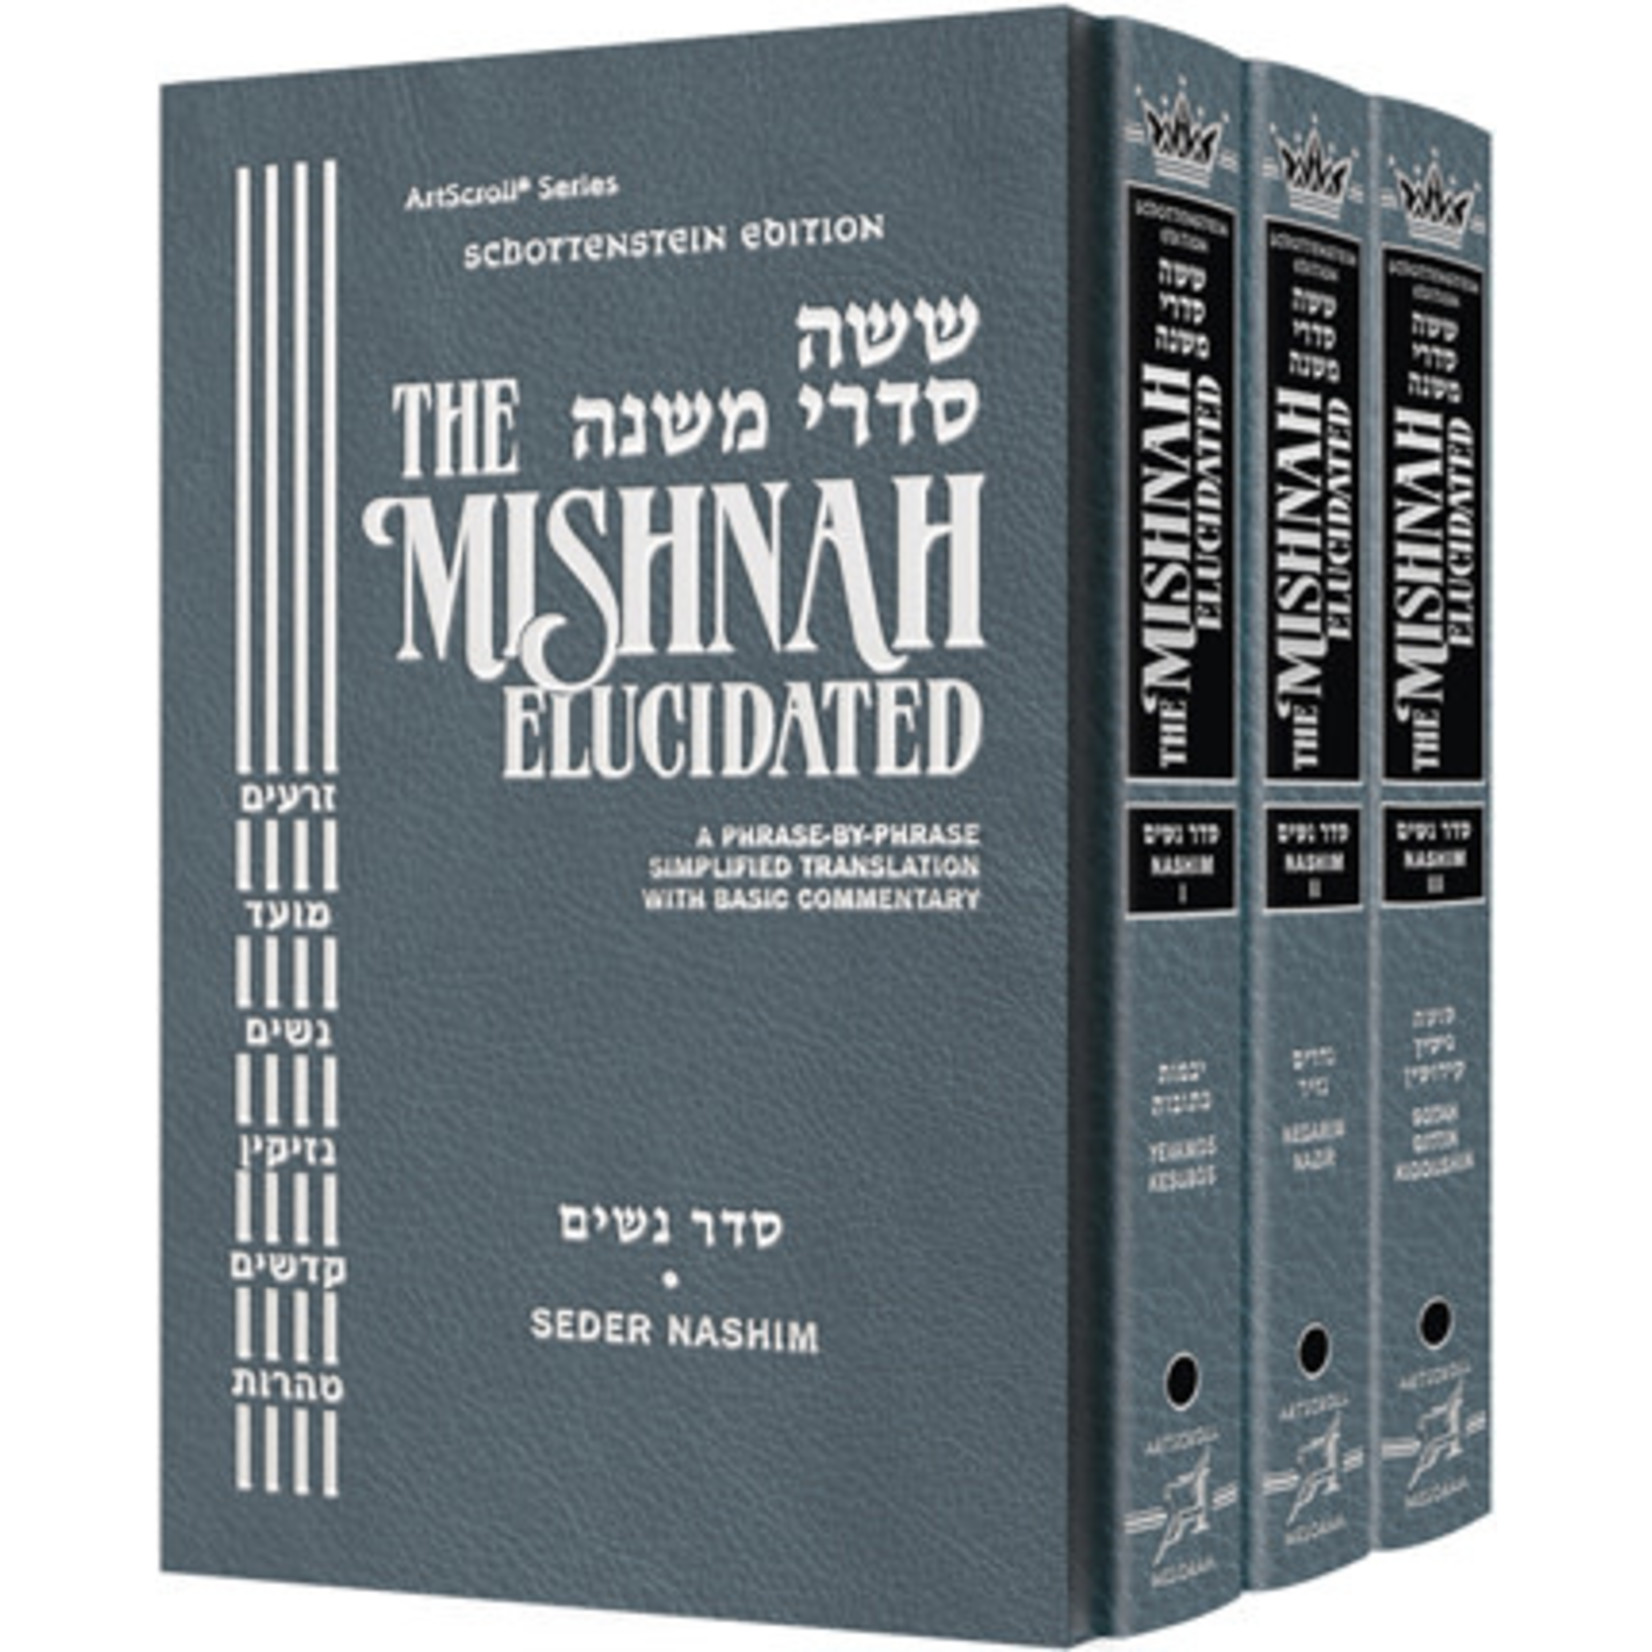 Seder Nashim Set - ArtScroll Schottenstein Edition Hebrew/English Elucidated Mishnah, Full Size